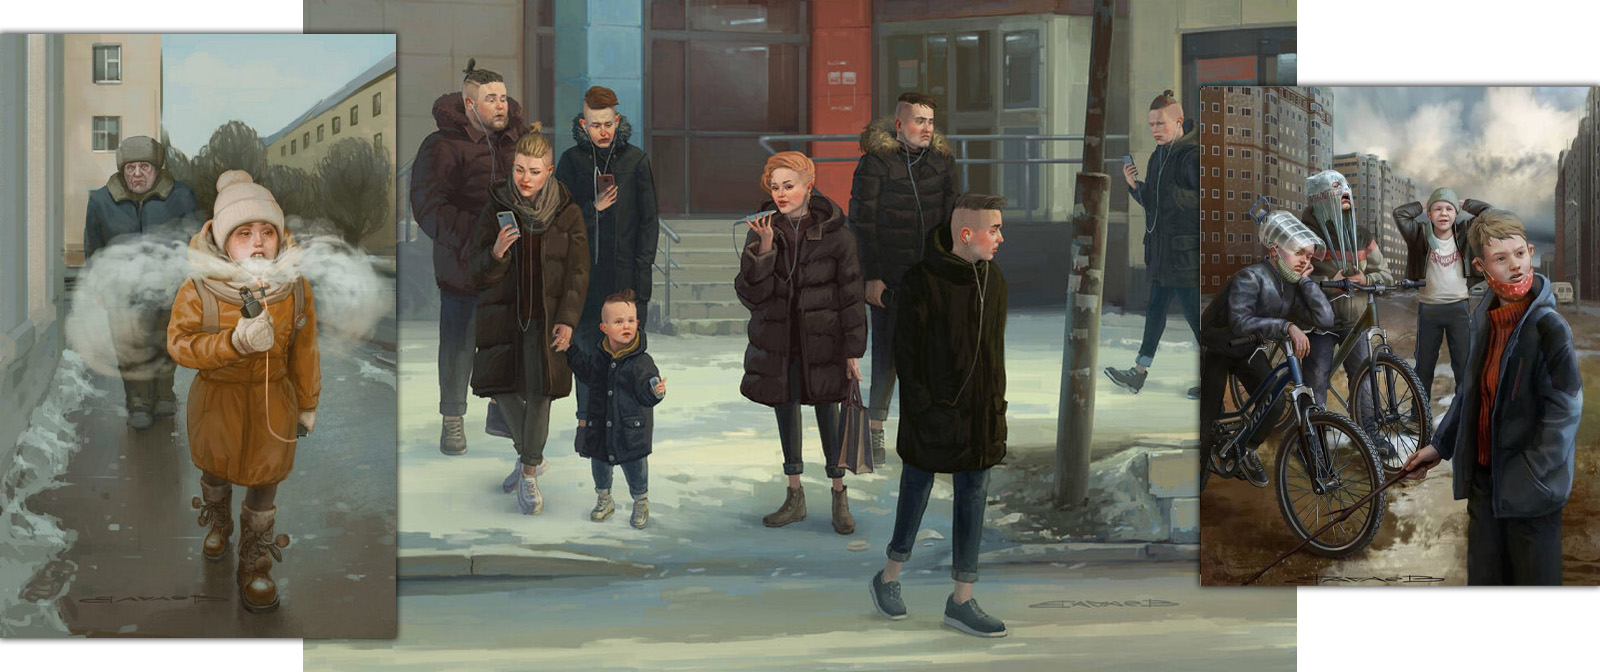 Ироничные картинах Михаила Вачаева про нашу жизнь, сдобренные иронией и гротеском ​